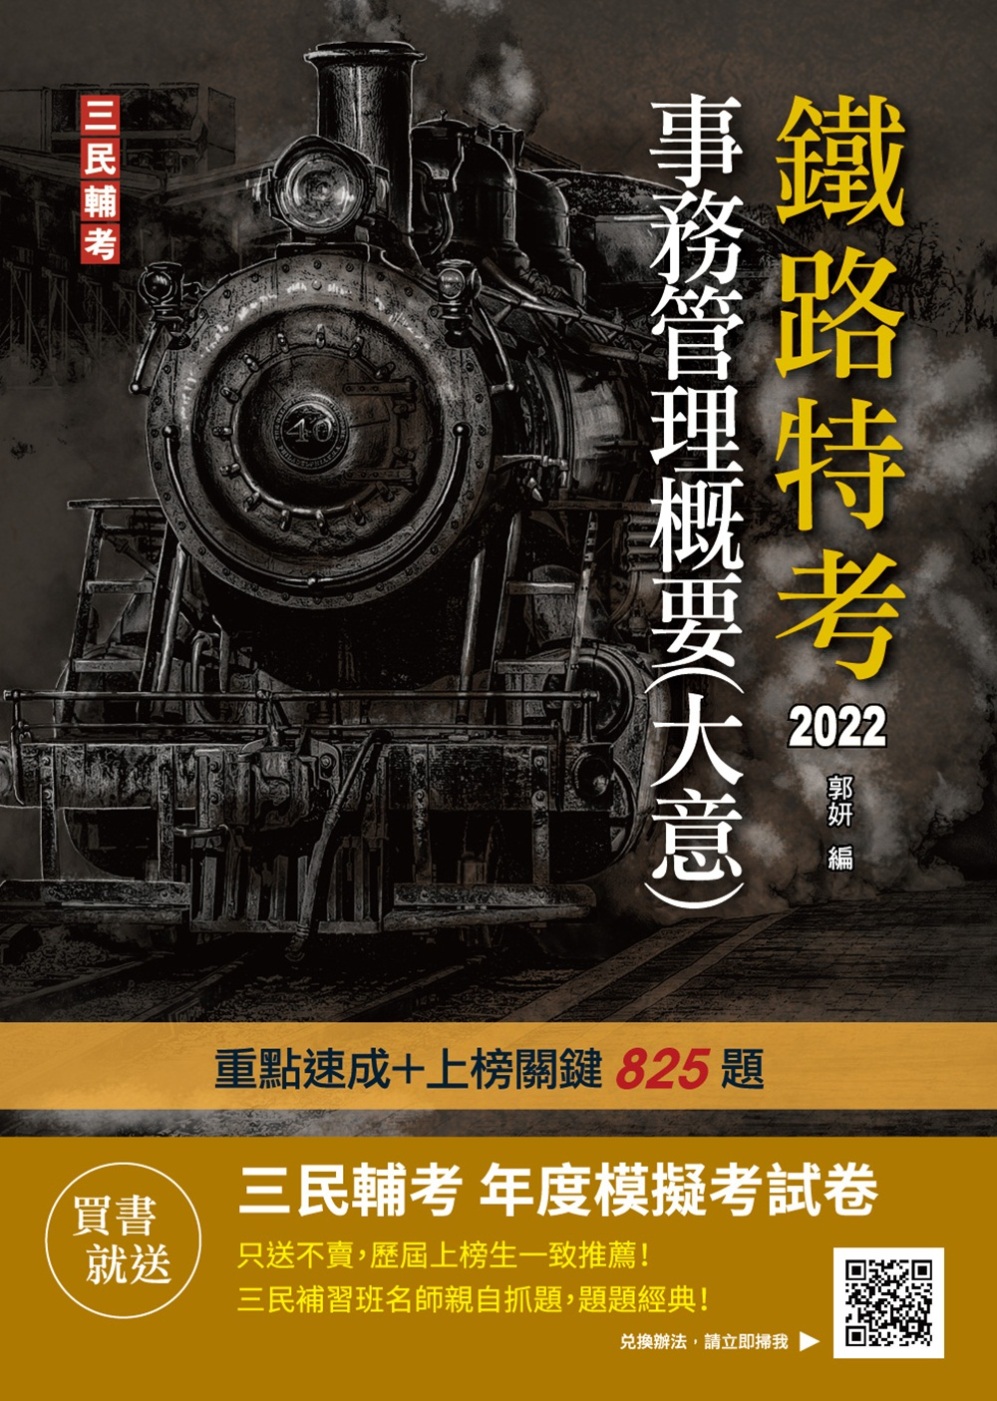 2022事務管理概要(大意)(鐵路佐級/營運人員適用)(贈鐵路特考模擬試卷)(十五版)